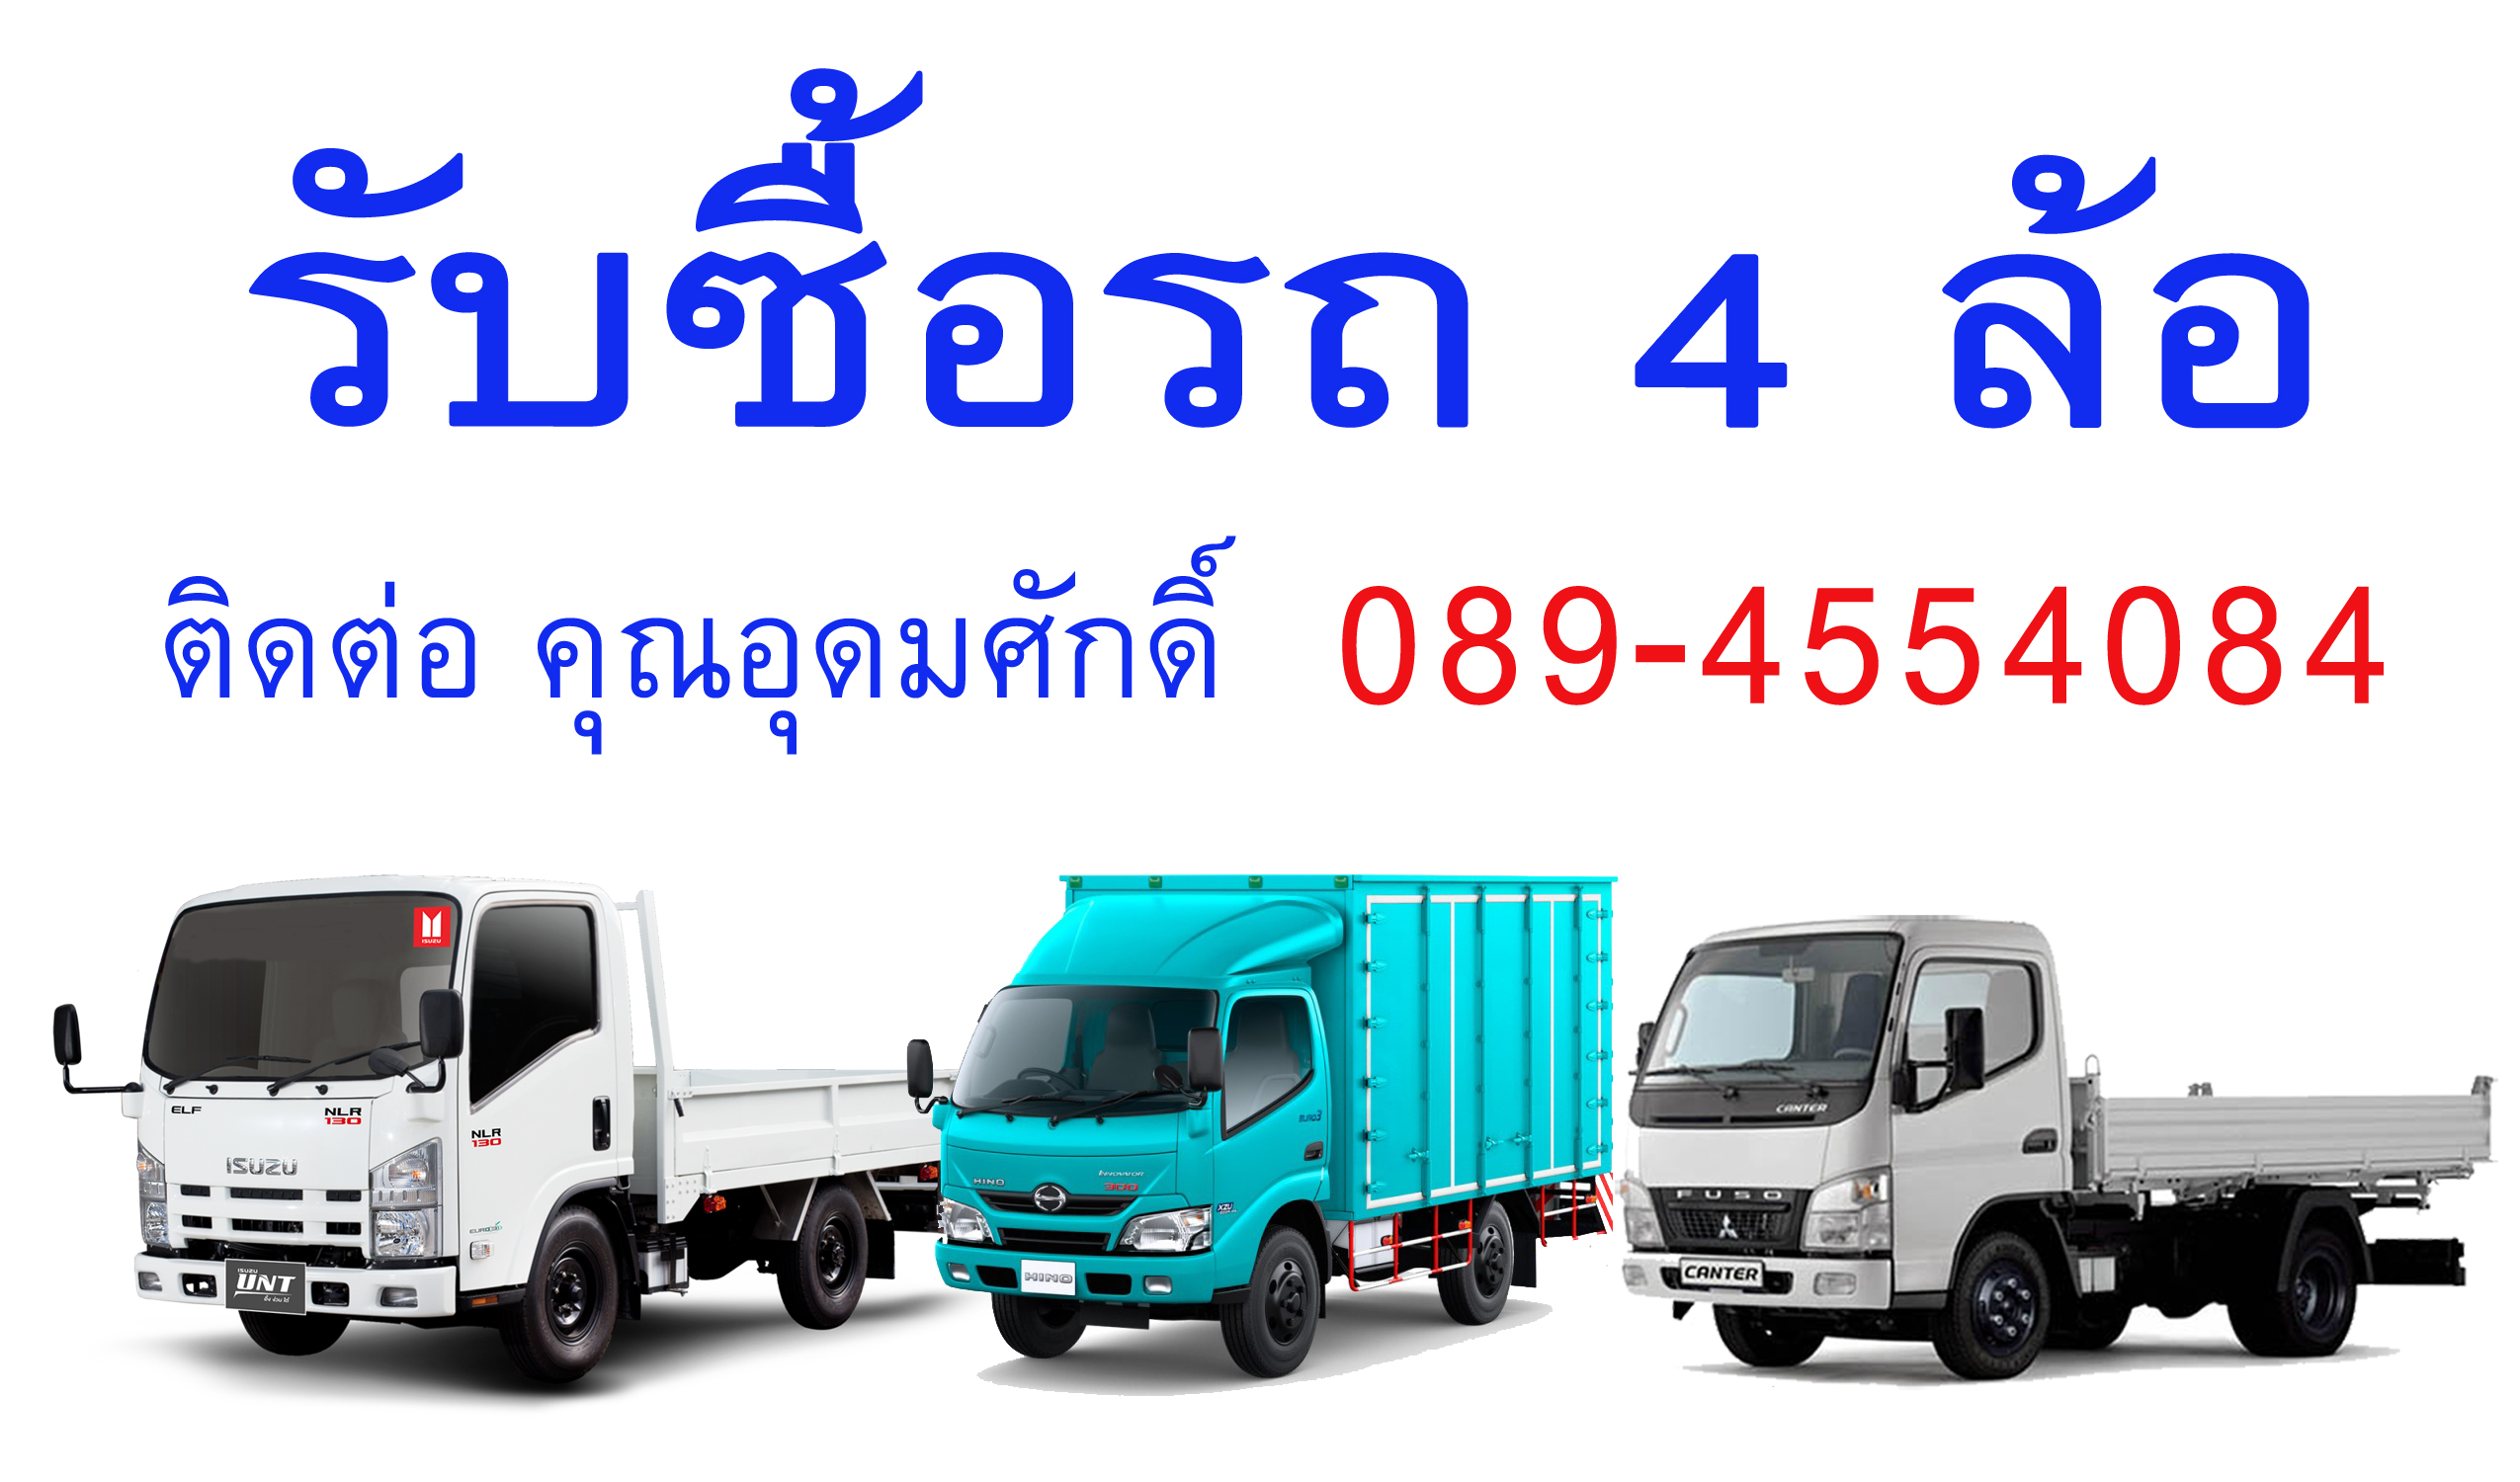 รับซื้อรถสี่ล้อใหญ่ NKR NLR นนทบุรี ปทุมธานี ชลบุรี ทุกรุ่น